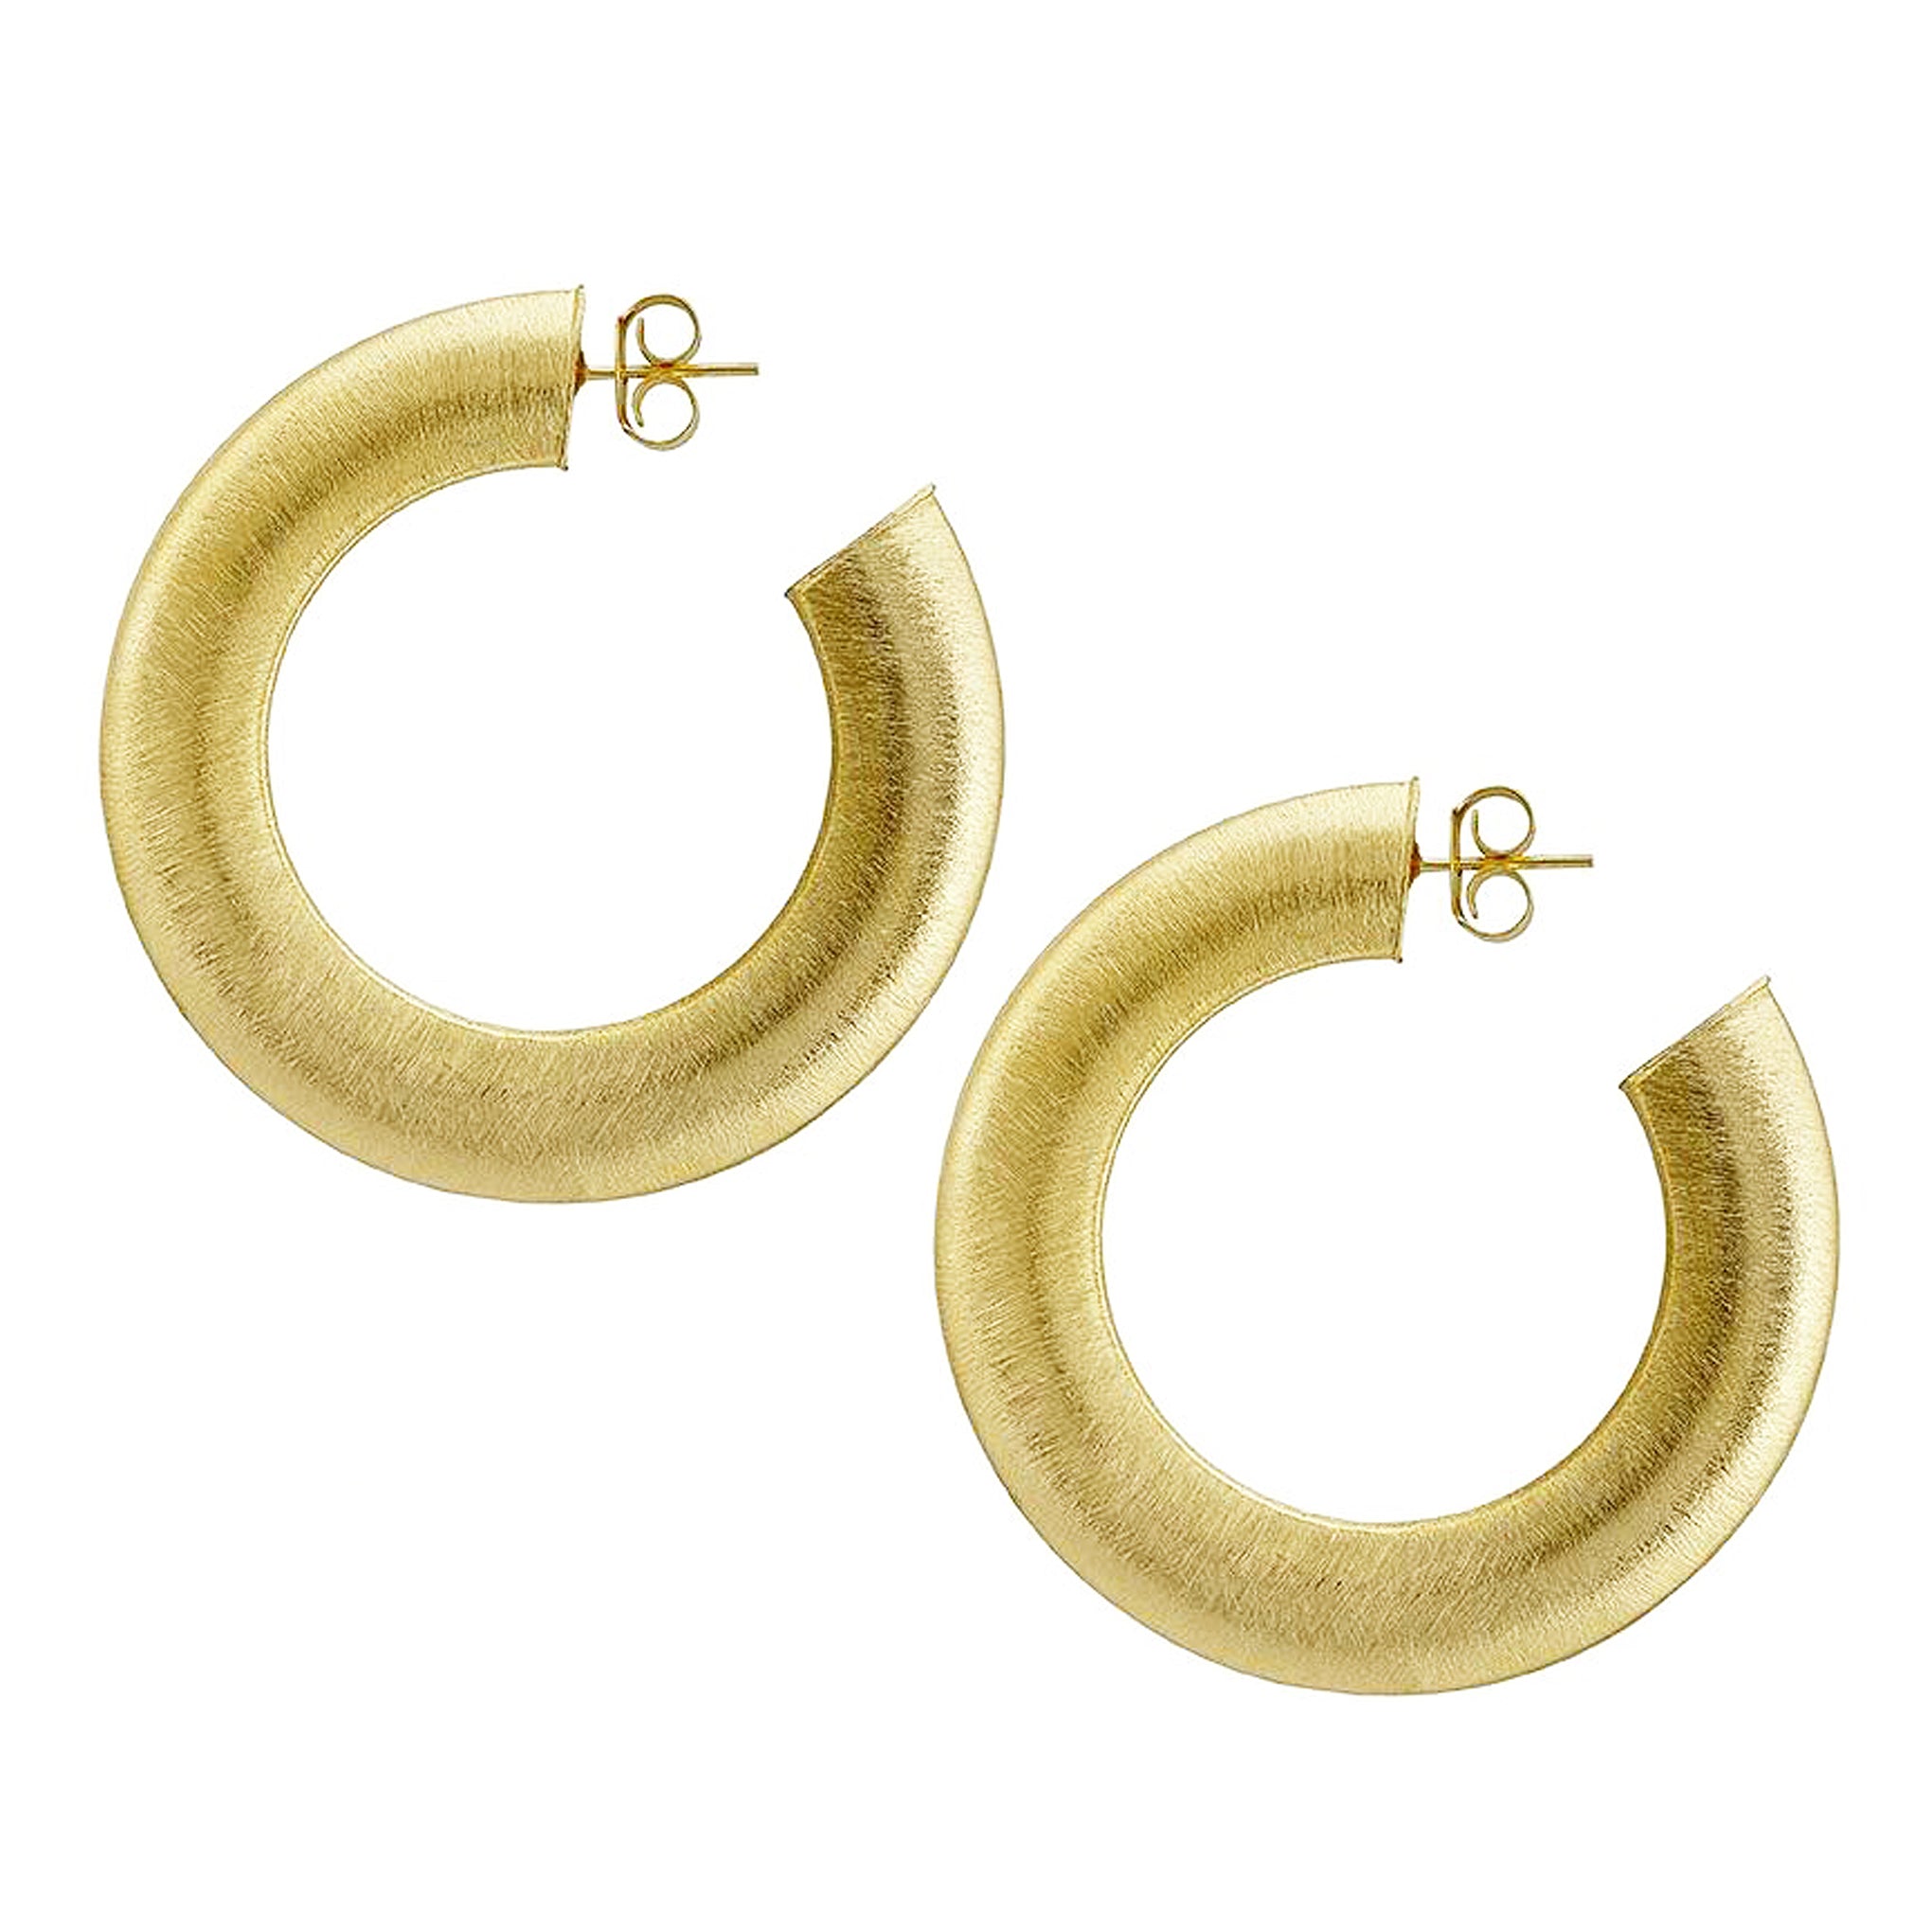 Sheila Fajl Irene 2.25 inch Large Flat Wide Hoop Earrings in Gold Plated